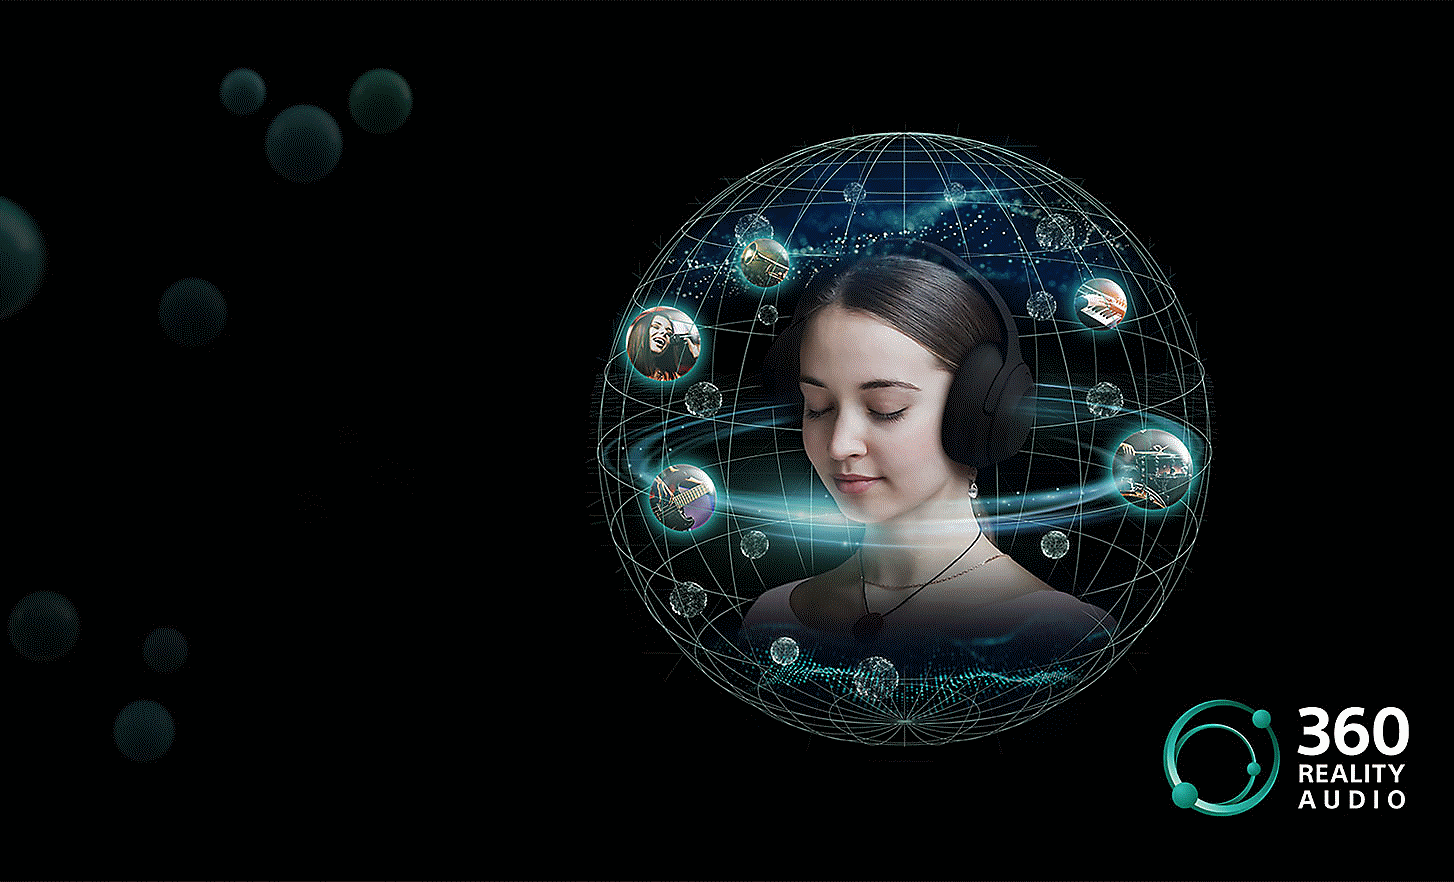 Imagem de uma mulher com auriculares numa rede em forma de globo, envolta em imagens dentro de bolhas e um logotipo Reality Audio 360